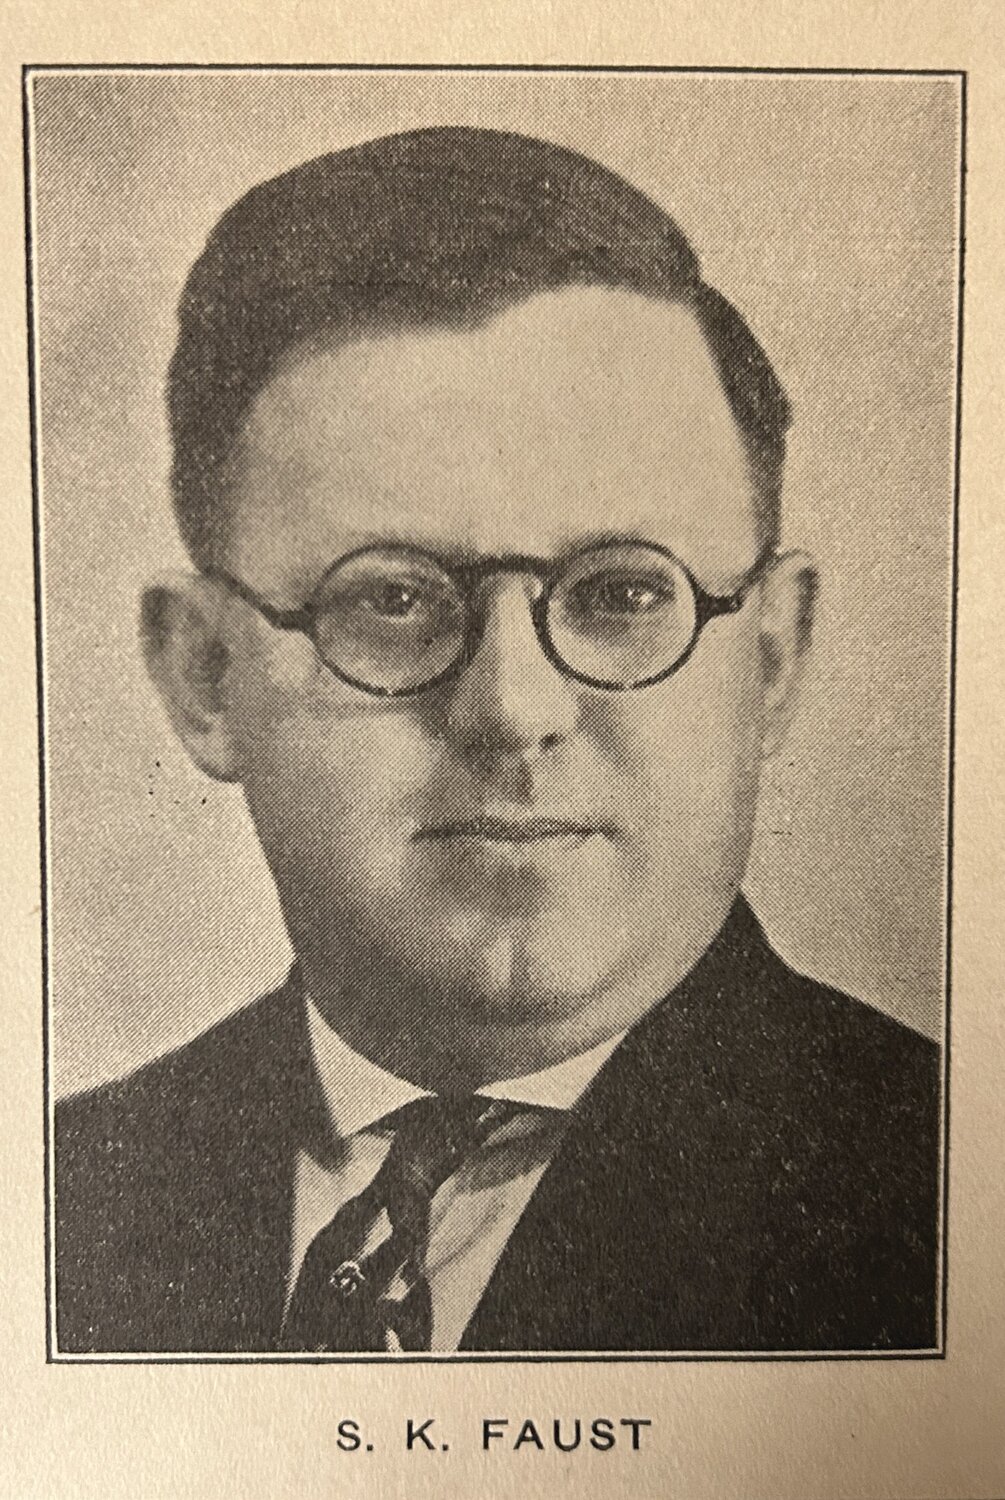 Samuel K. Faust, Bensalem Township’s first superintendent of schools.